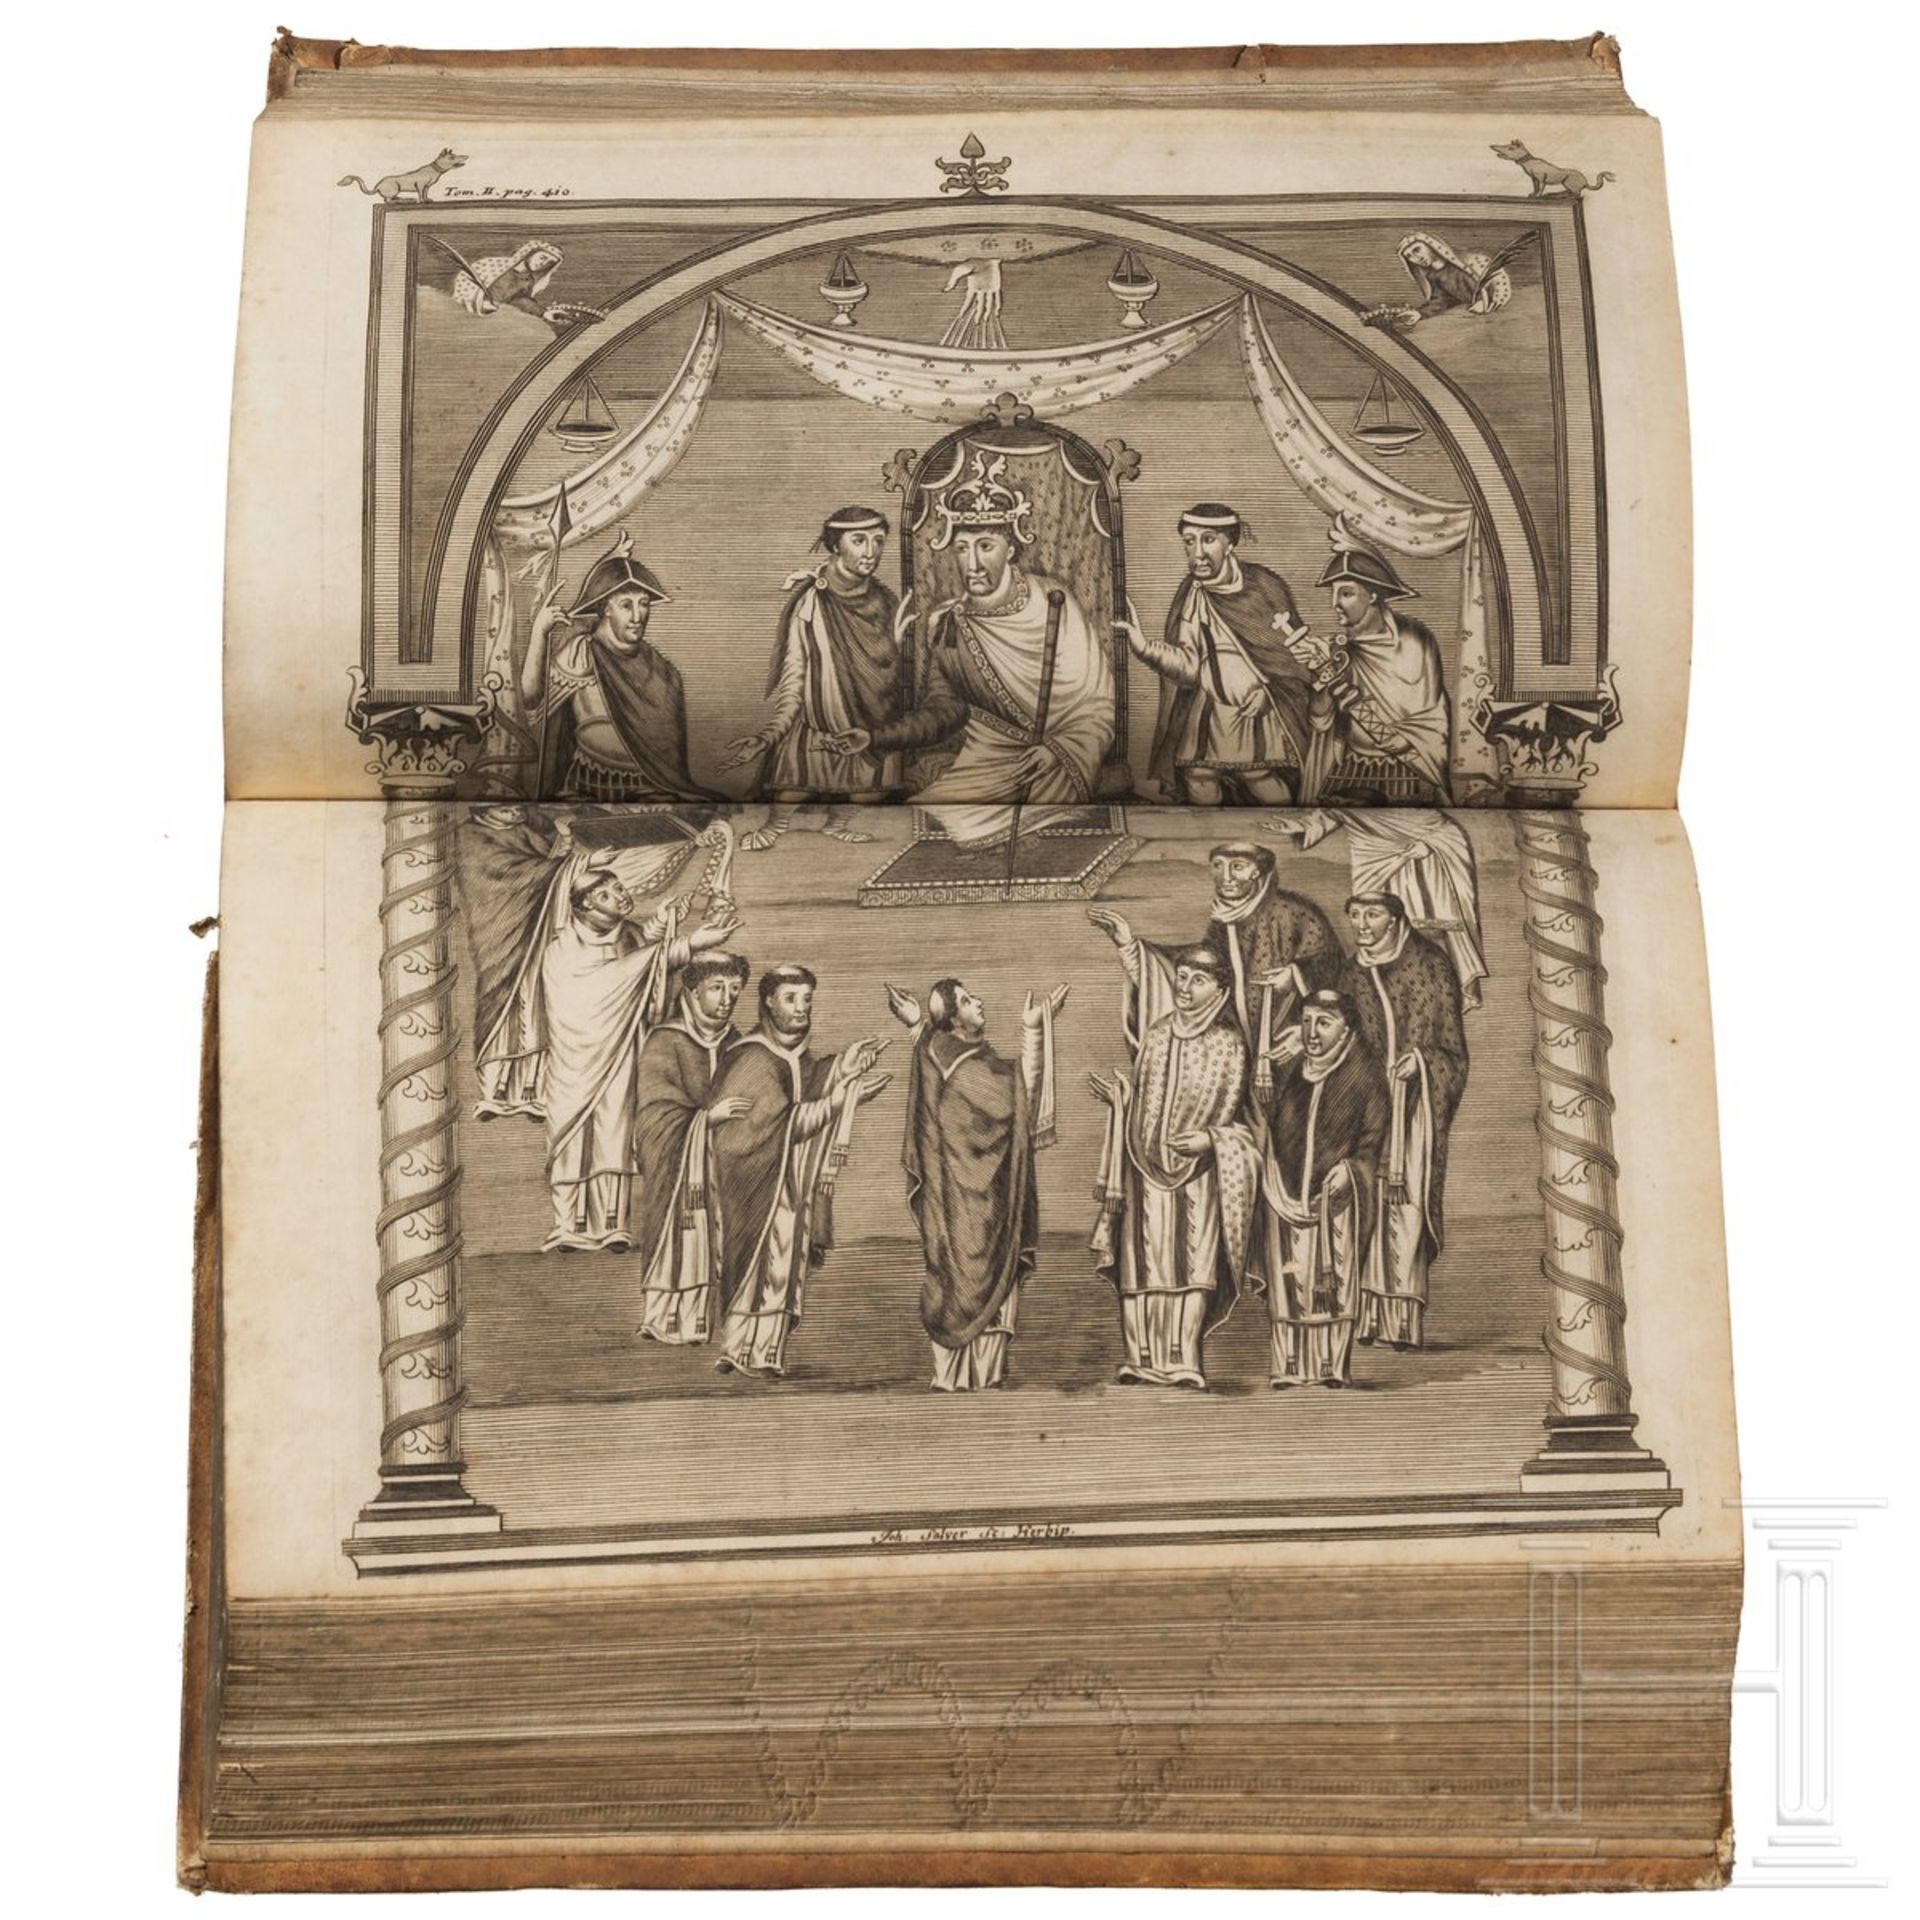 Eckhart, Johann Georg von "Commentarii de rebus franciae orientalis et episcopatus wirceburgensis - Bild 2 aus 3